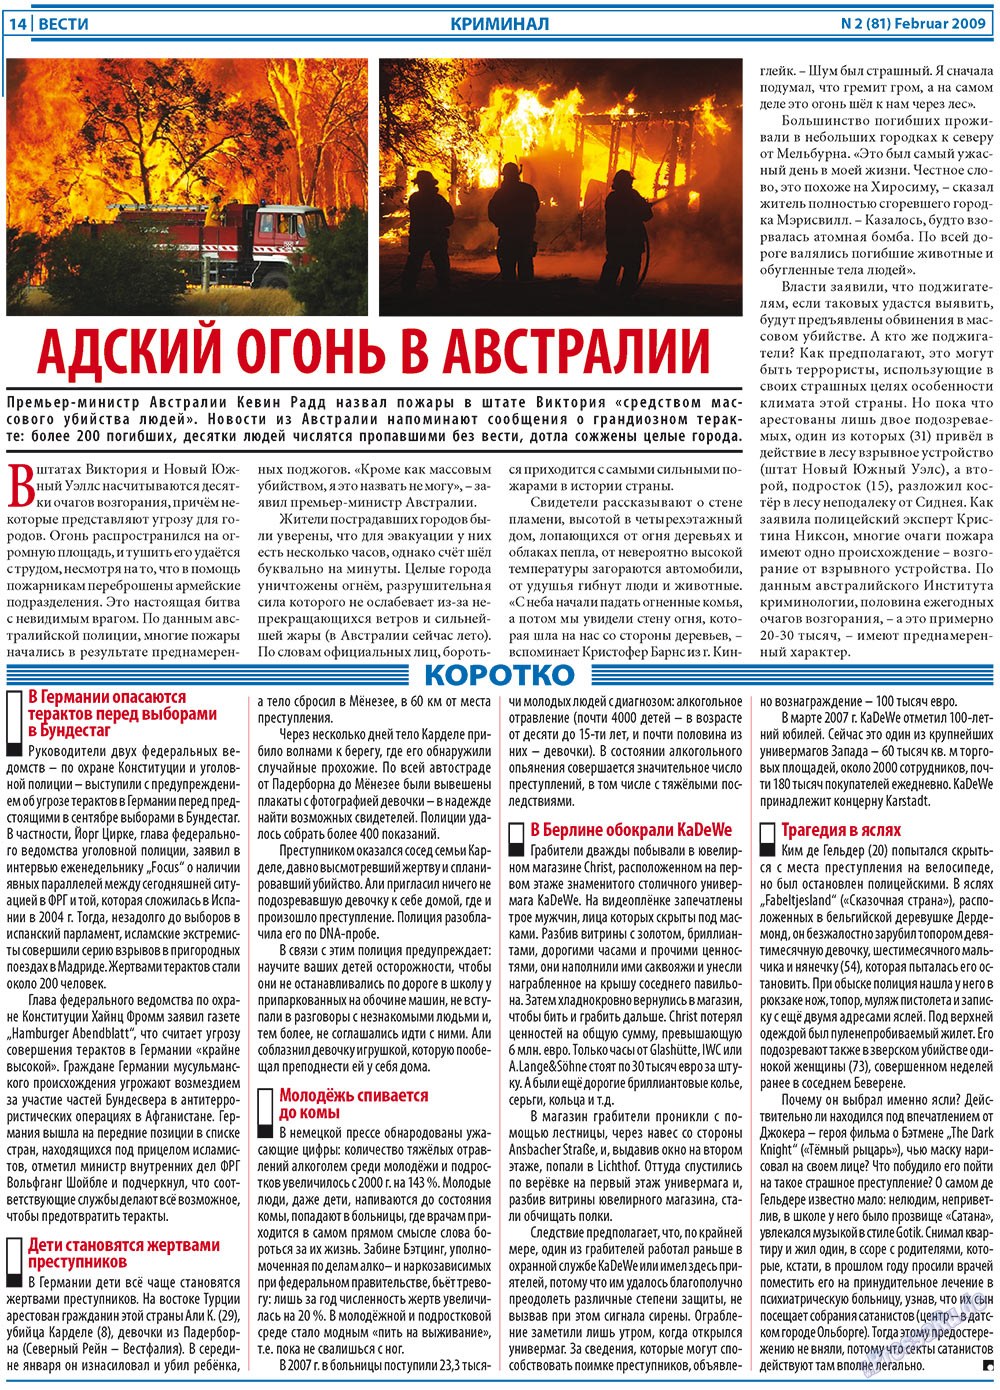 Вести, газета. 2009 №2 стр.14